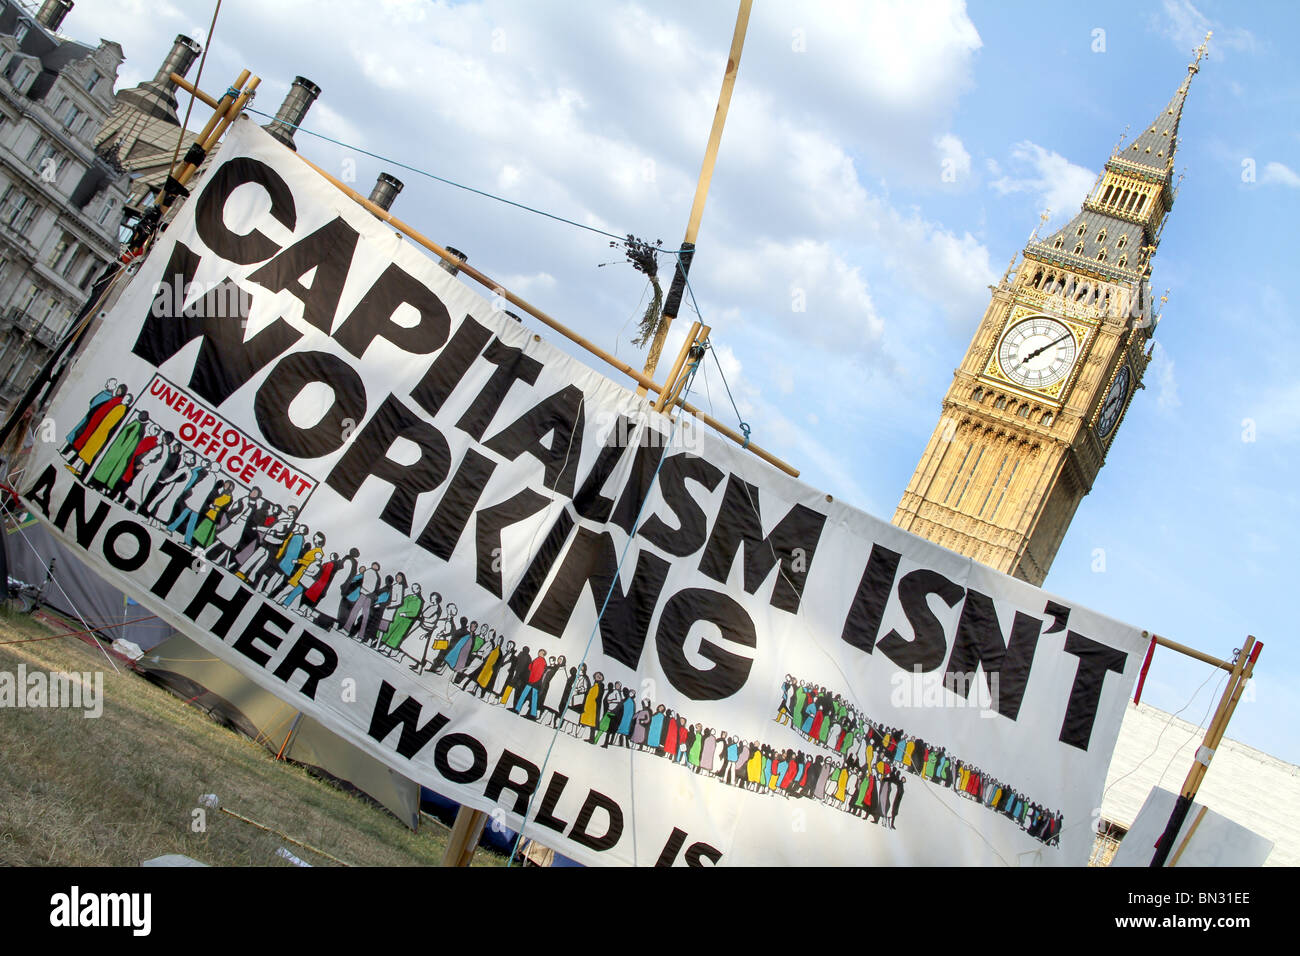 Campamento de Paz, la Plaza del Parlamento y el Big Ben con la lucha contra el capitalismo, el capitalismo banner de demostración no funciona, Londres, Inglaterra Foto de stock